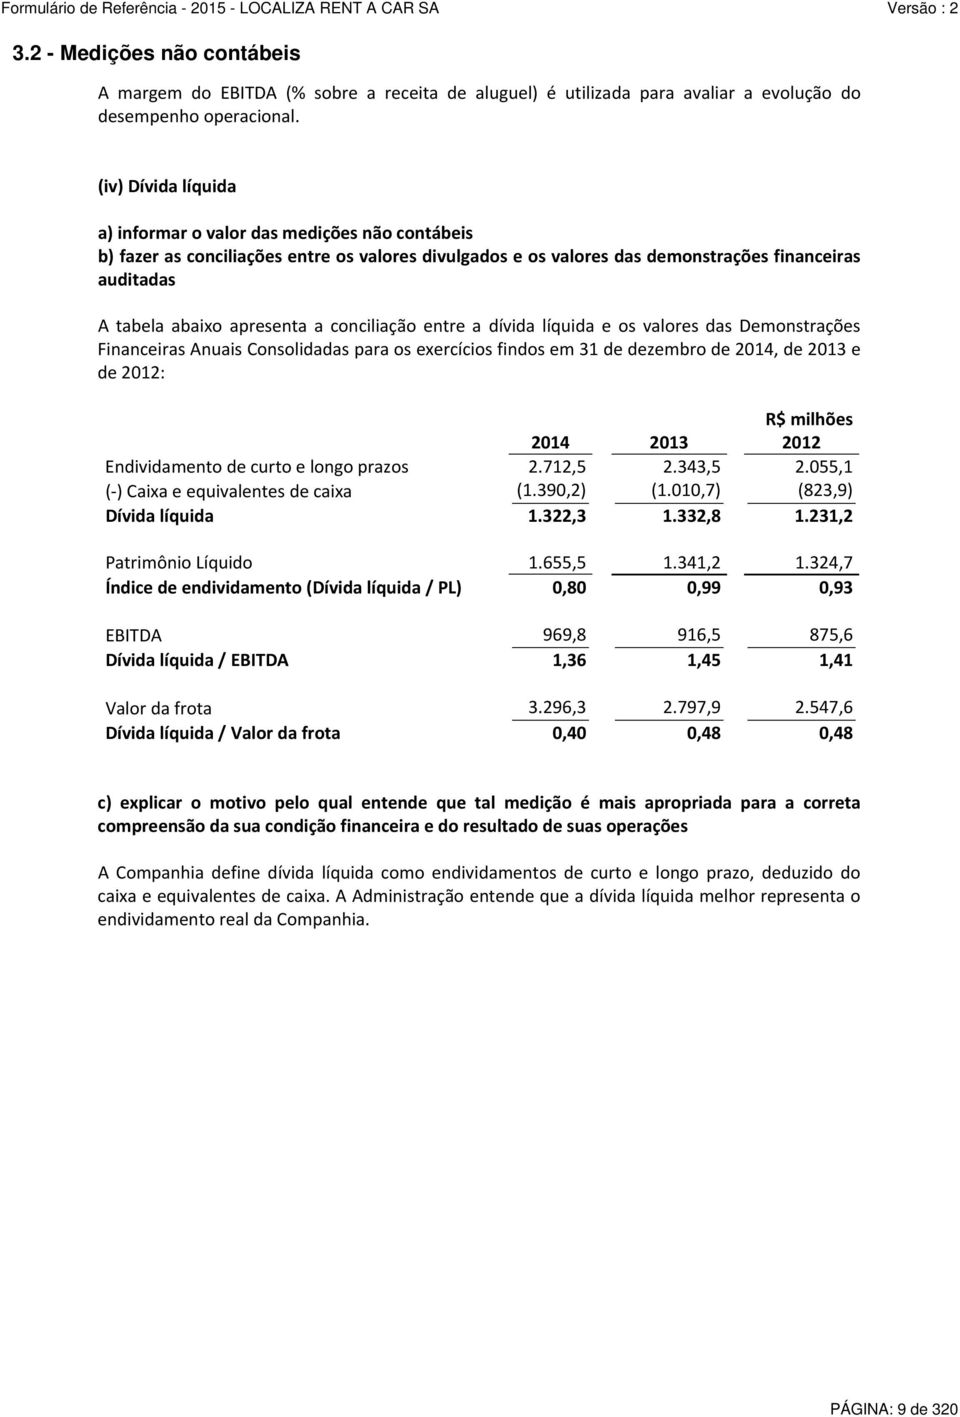 a conciliação entre a dívida líquida e os valores das Demonstrações Financeiras Anuais Consolidadas para os exercícios findos em 31 de dezembro de 2014, de 2013 e de 2012: R$ milhões 2014 2013 2012